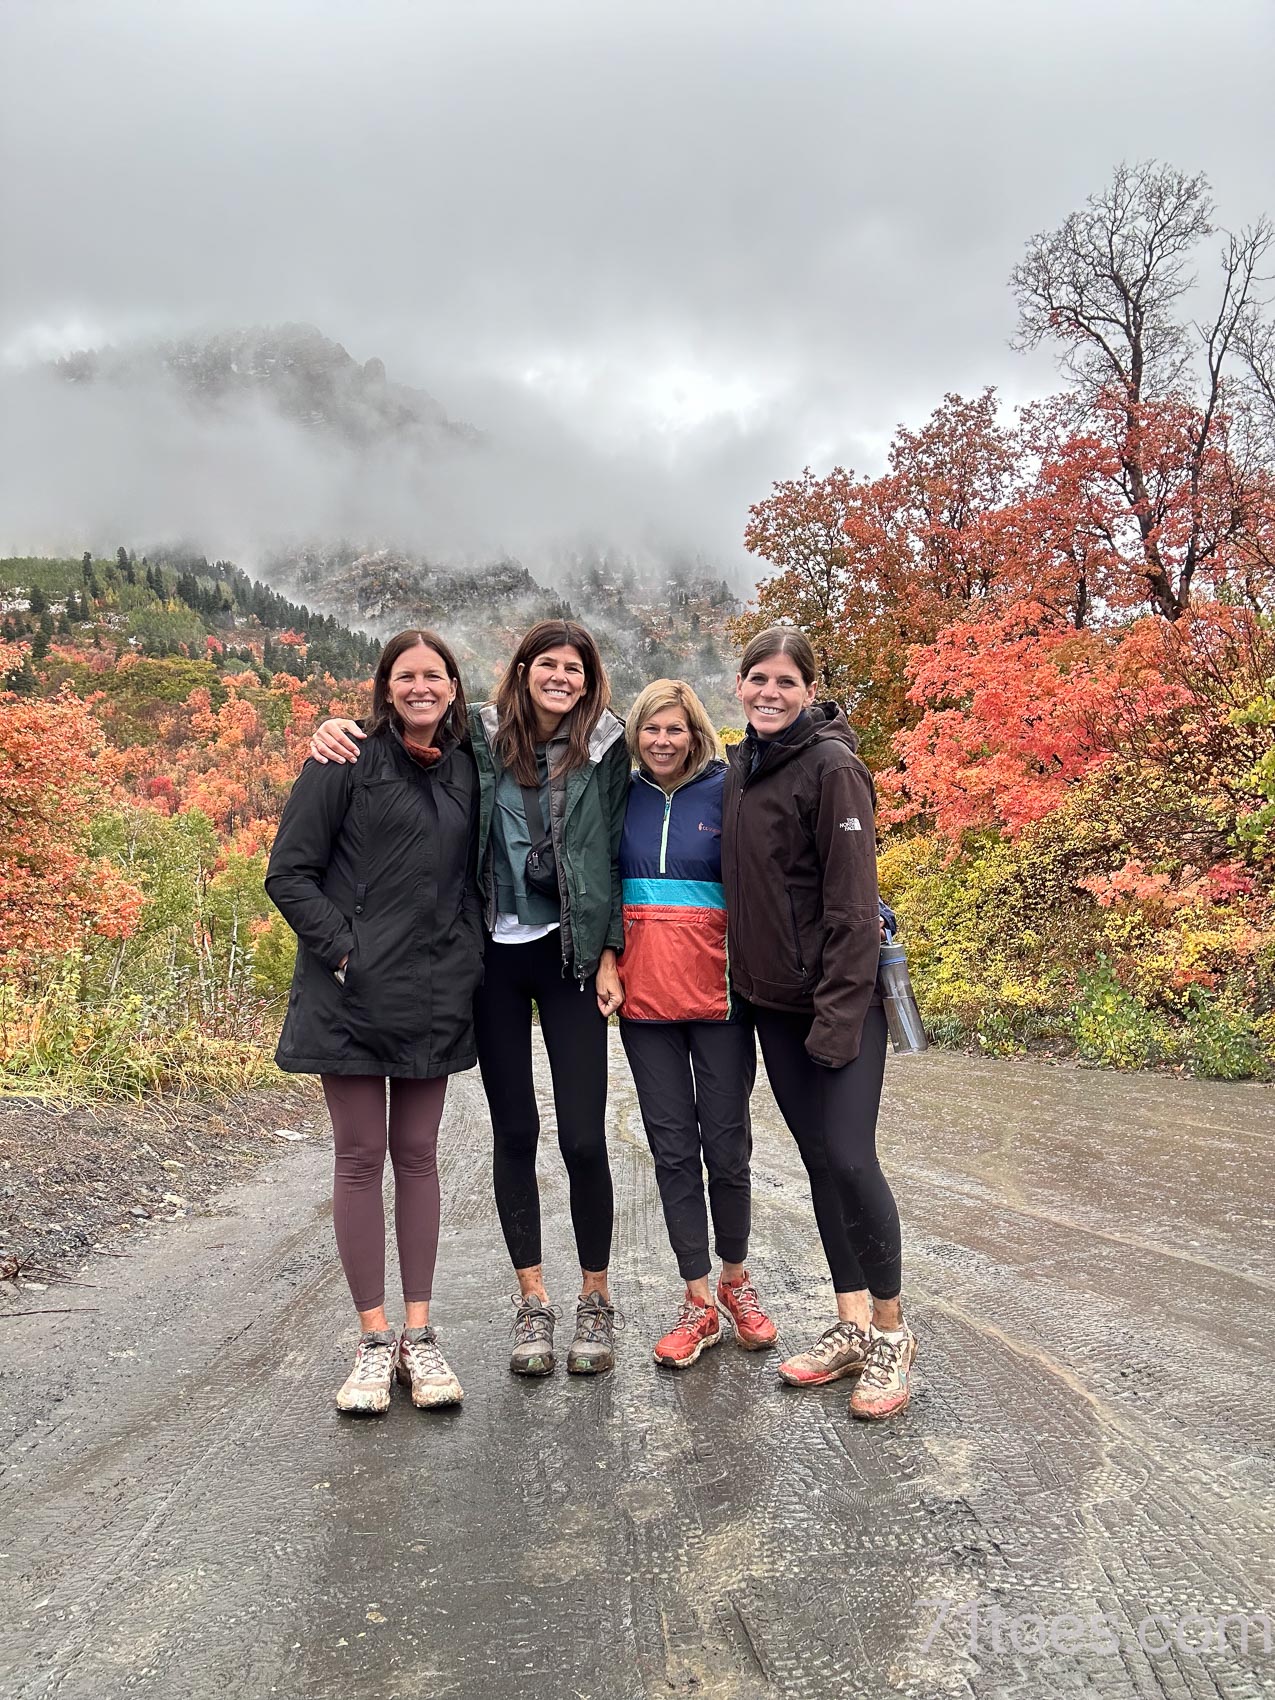 Saren, Shawni, Saydi and Charity in the Utah fall foliage